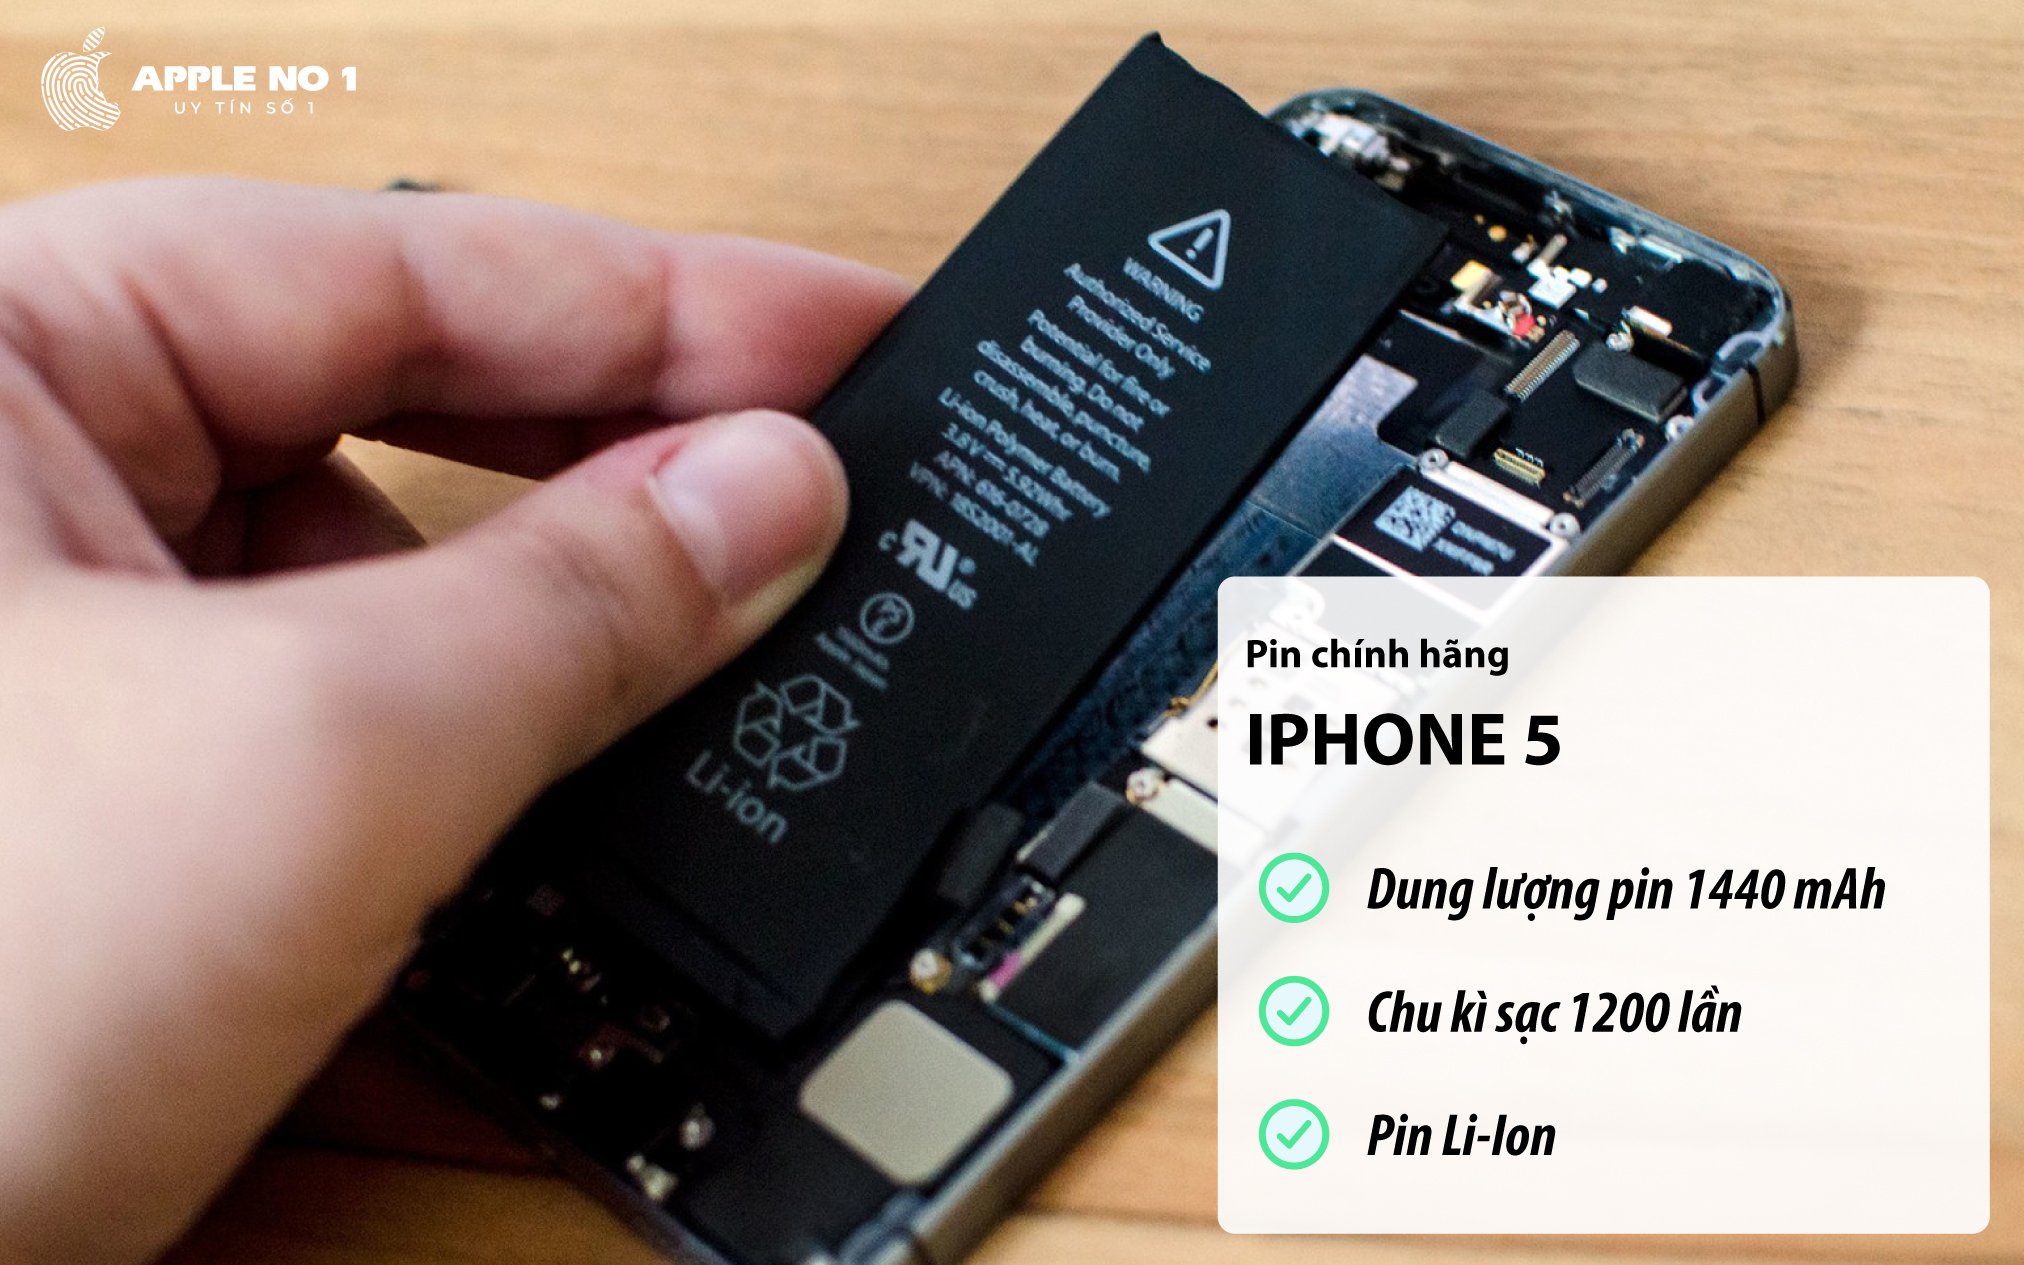 Điện thoại iPhone 5 sở hữu dung lượng pin 1440 mAh, chu kì sạc 1200 lần